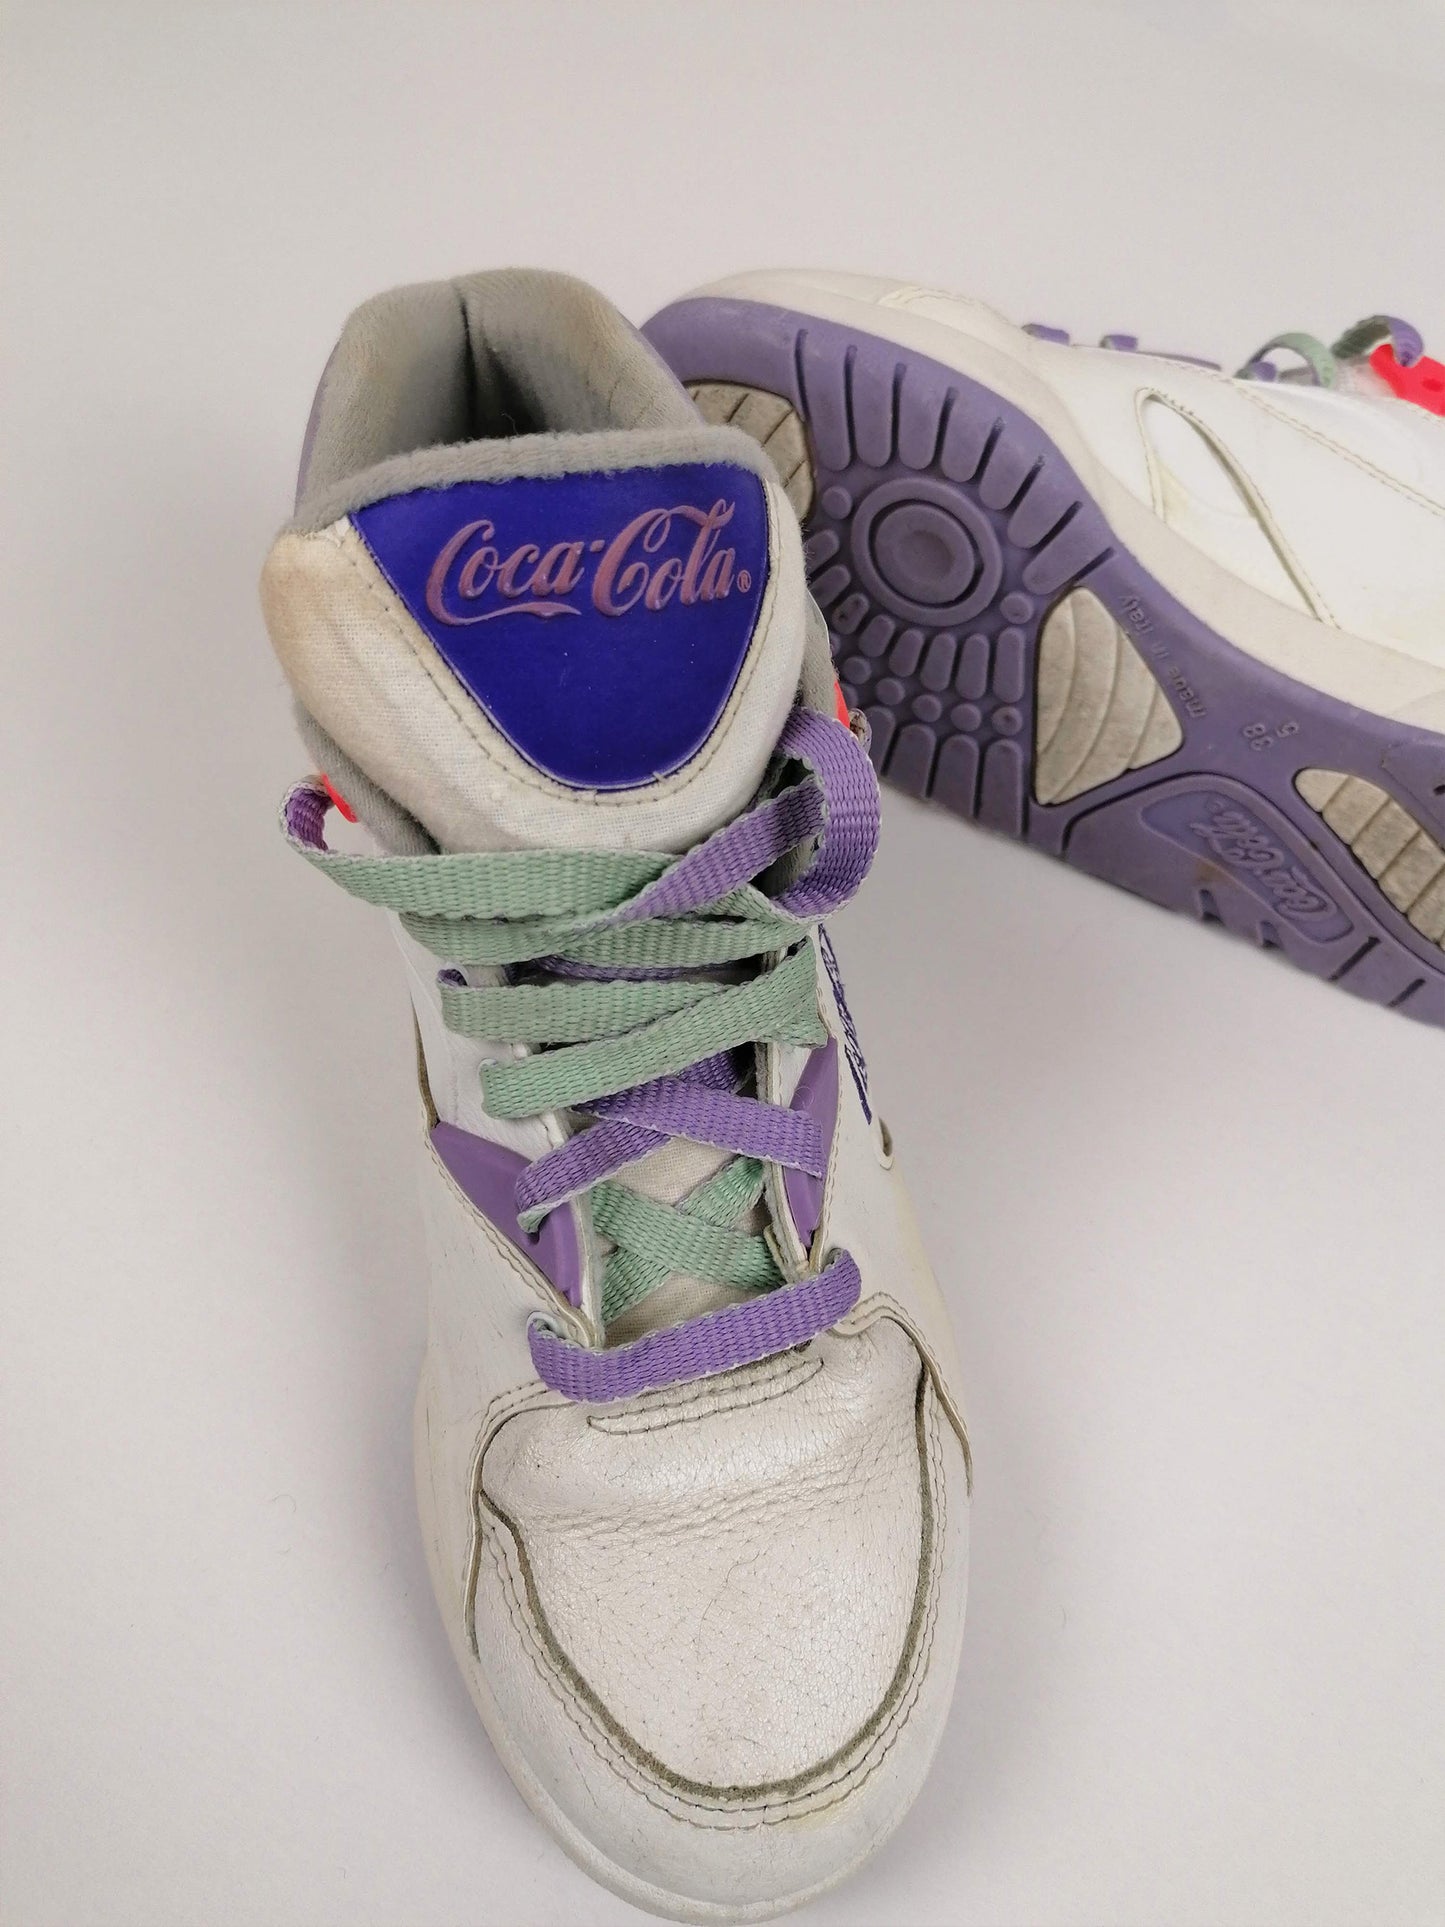 1990 Coca Cola Retro Sneakers Hi-Tops - size EU 38 / US 7.5 / UK 5